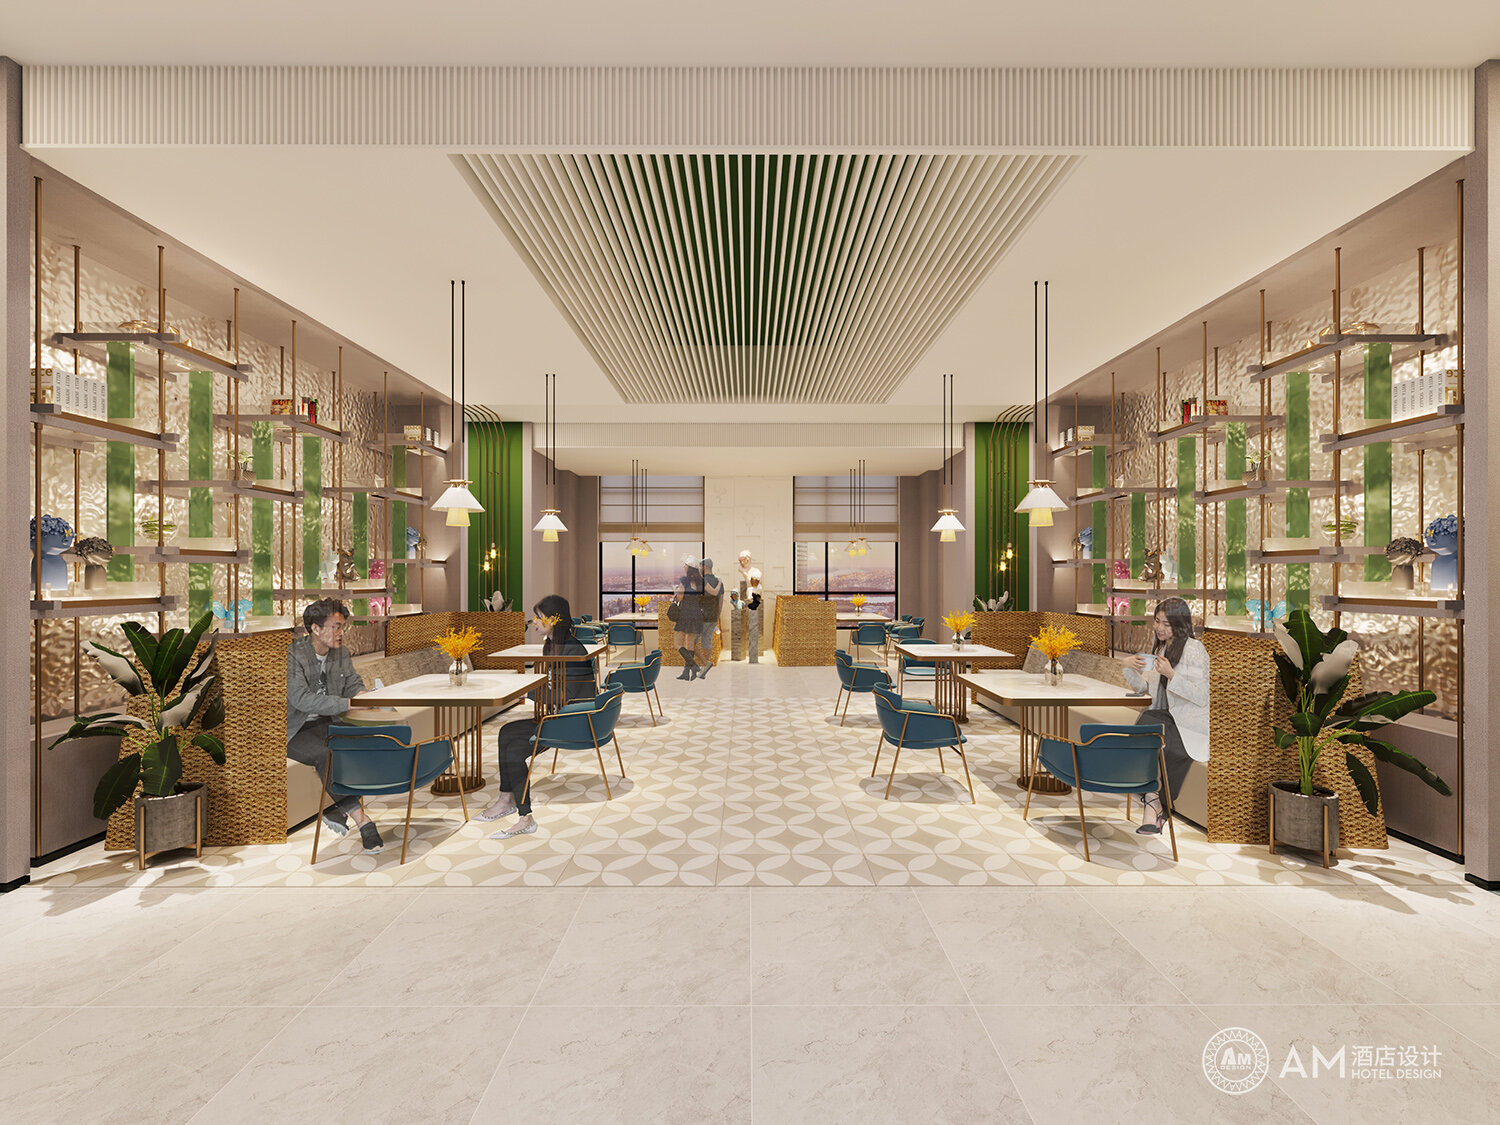 AM DESIGN | Rest area design of Weinan Hotel